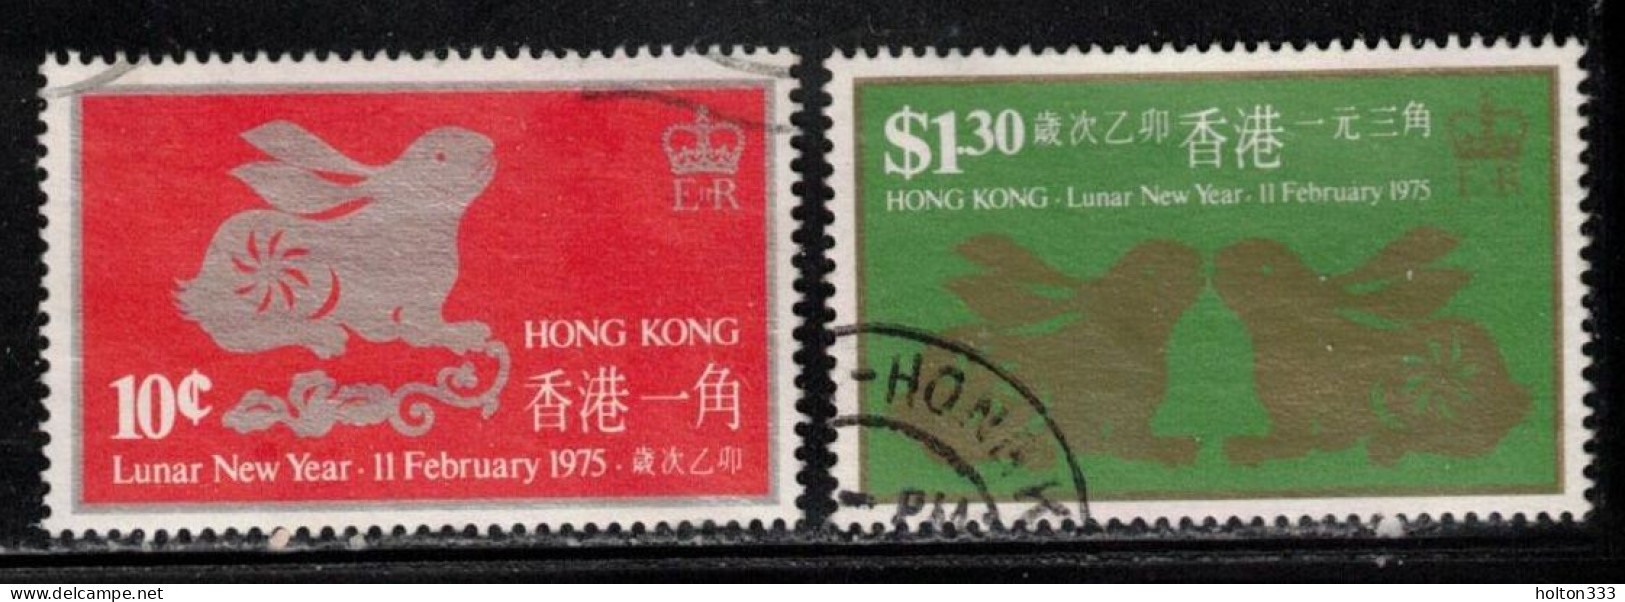 HONG KONG Scott # 302-3 Used - Lunar New Year 1975 - Gebruikt